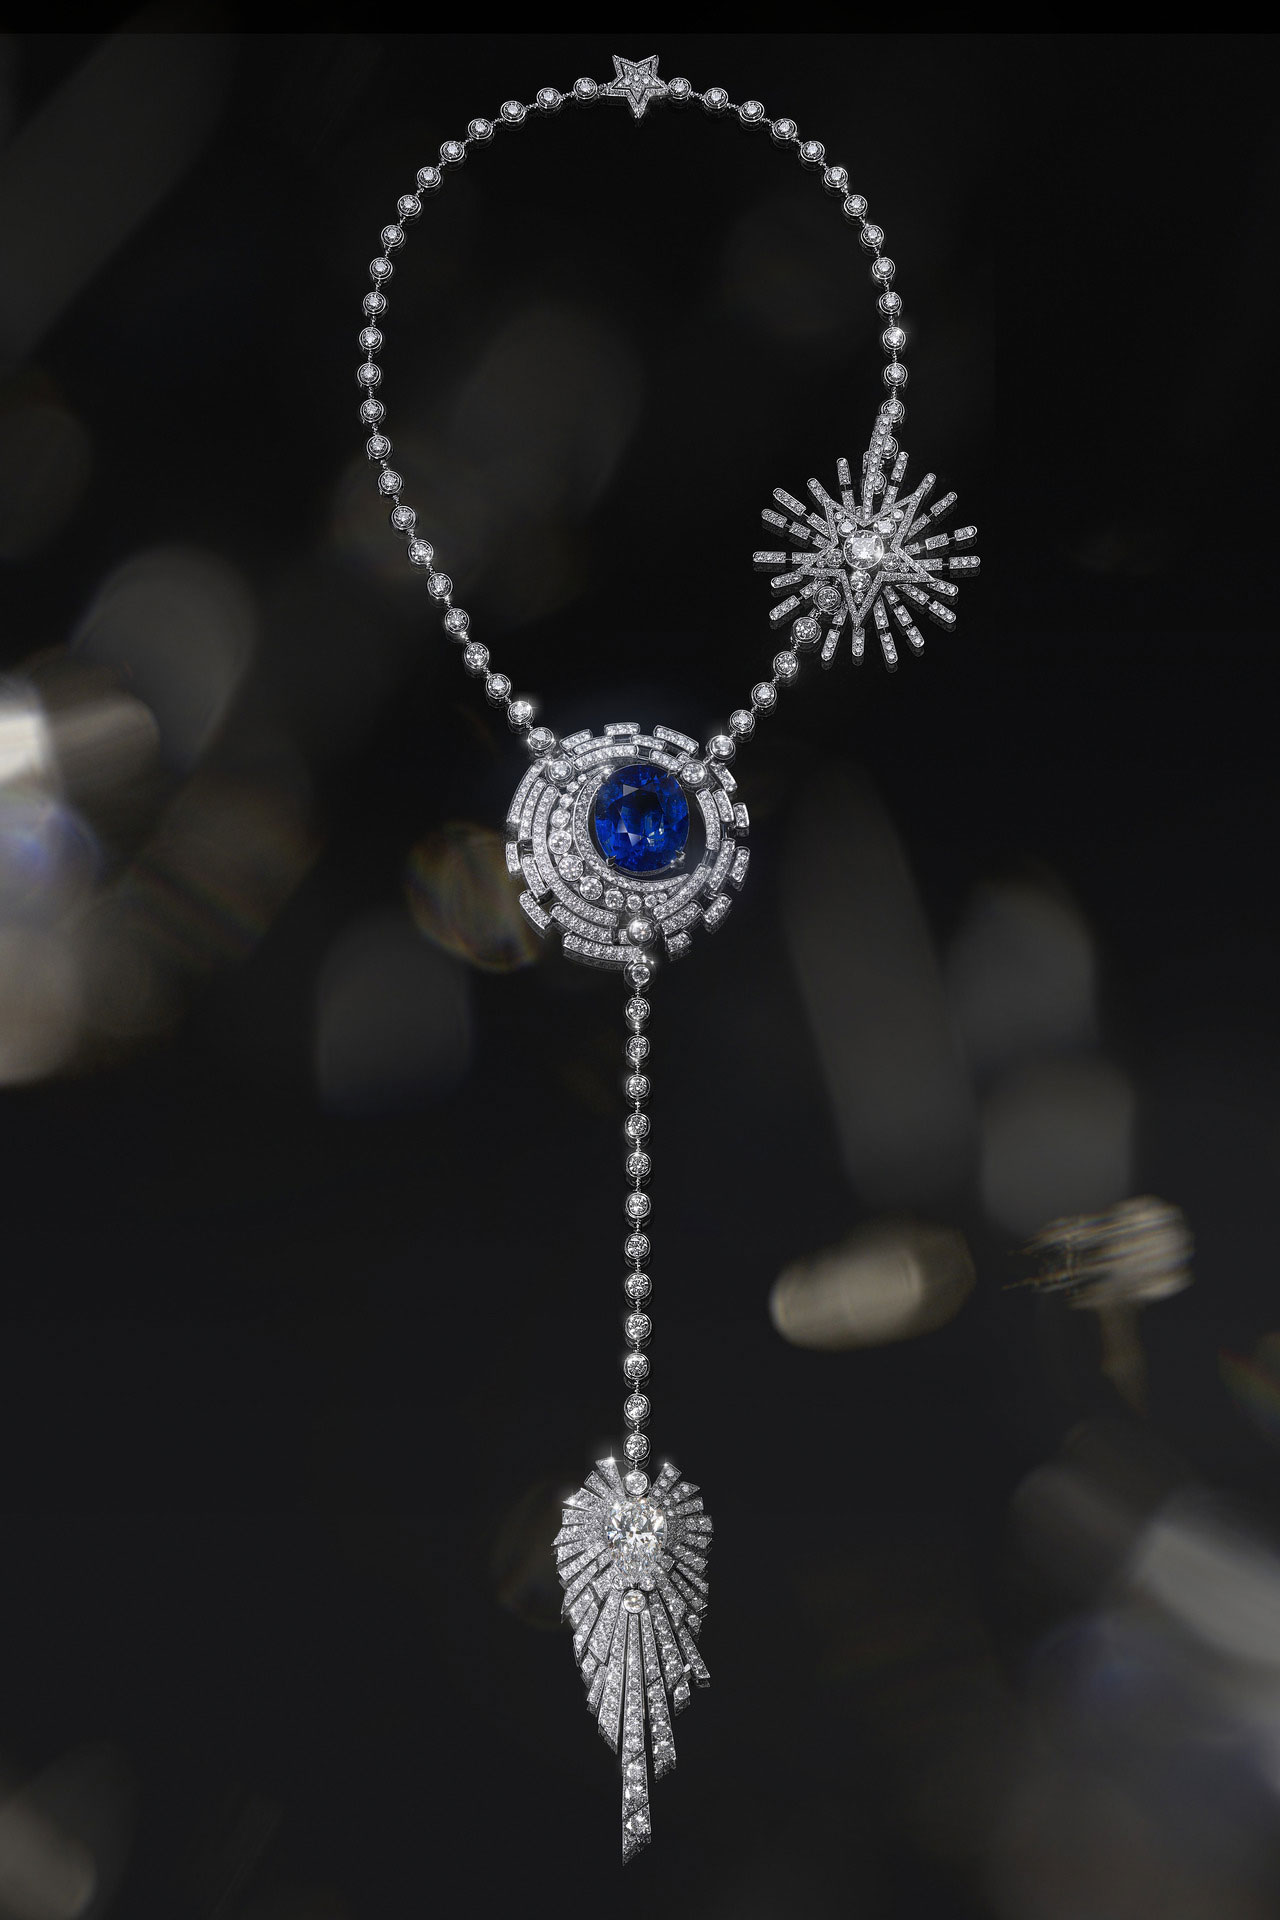 collana Allure Céleste Chanel High Jewelry “1932”